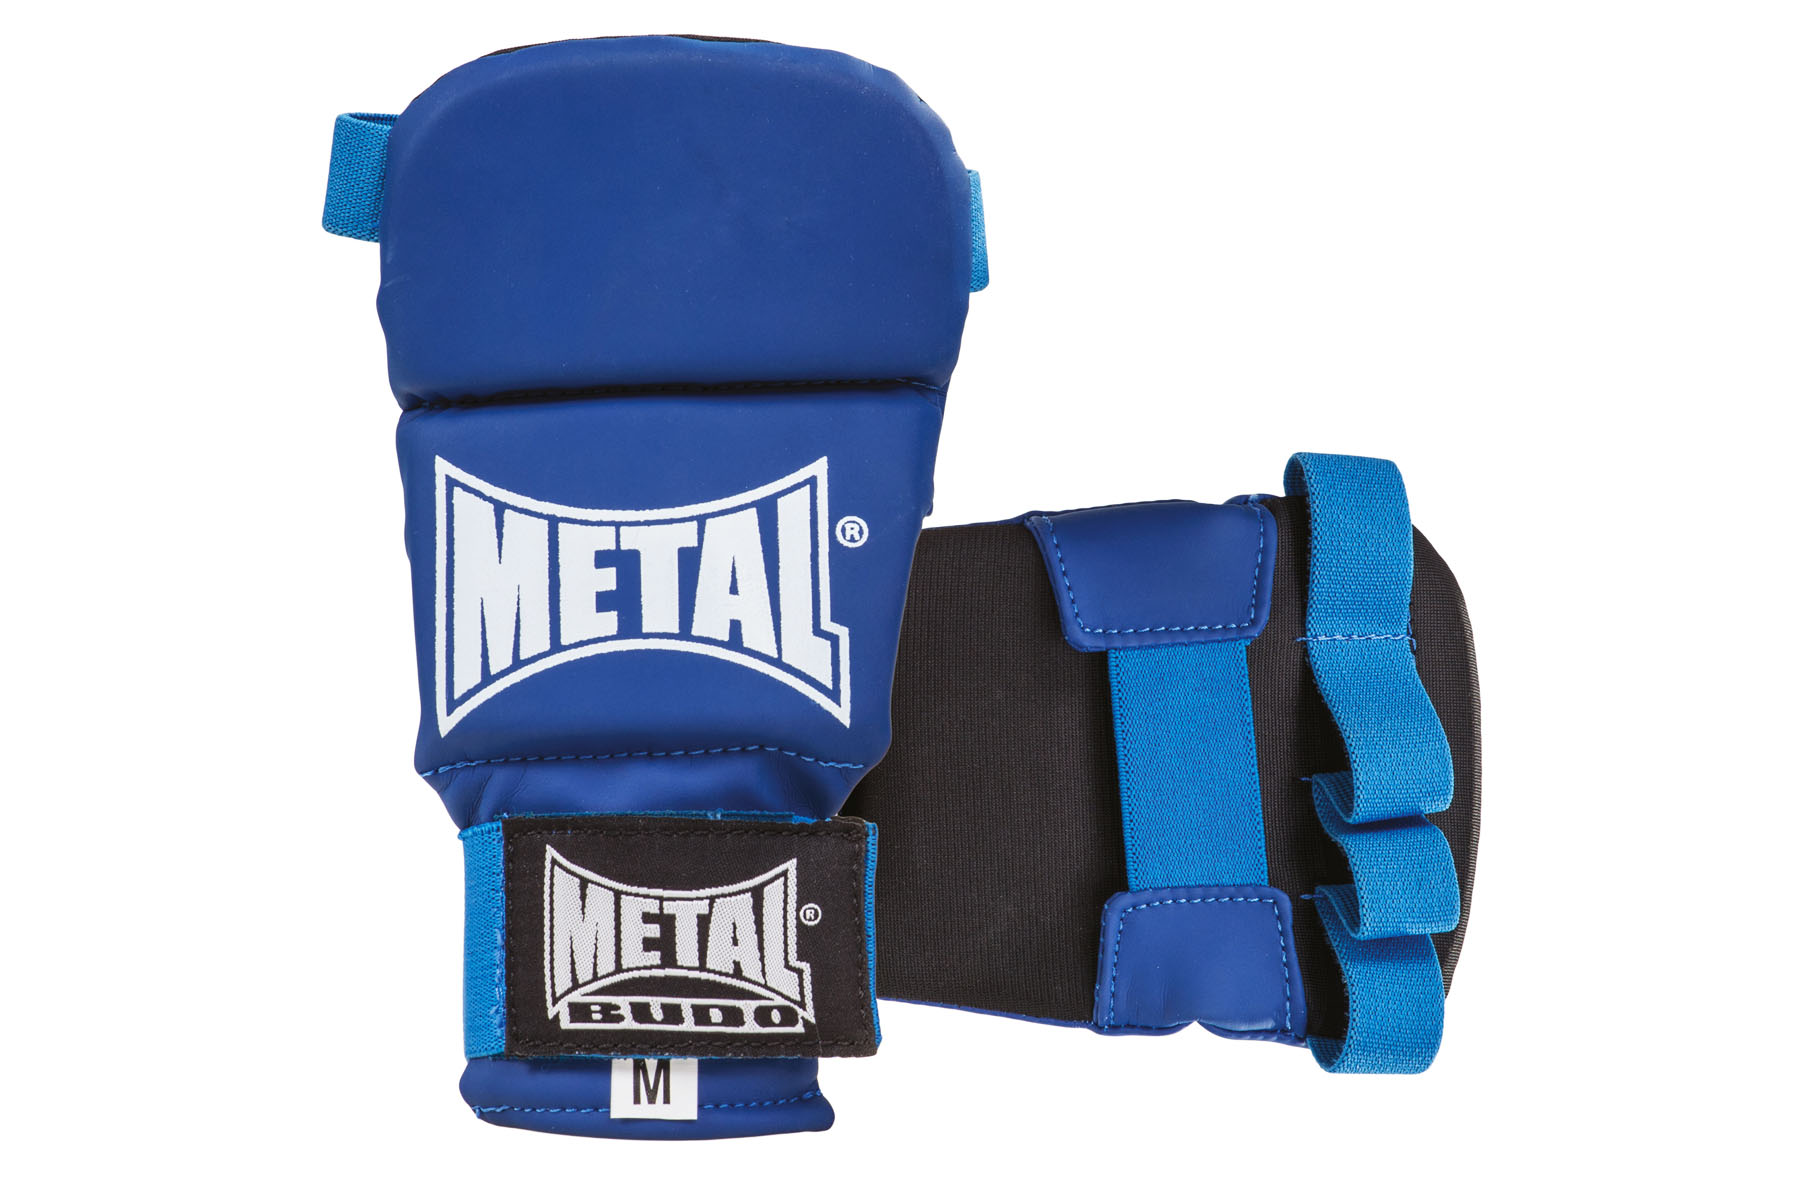 Guantes MMA, Concurso y entrenamiento - MB534M, Metal Boxe 